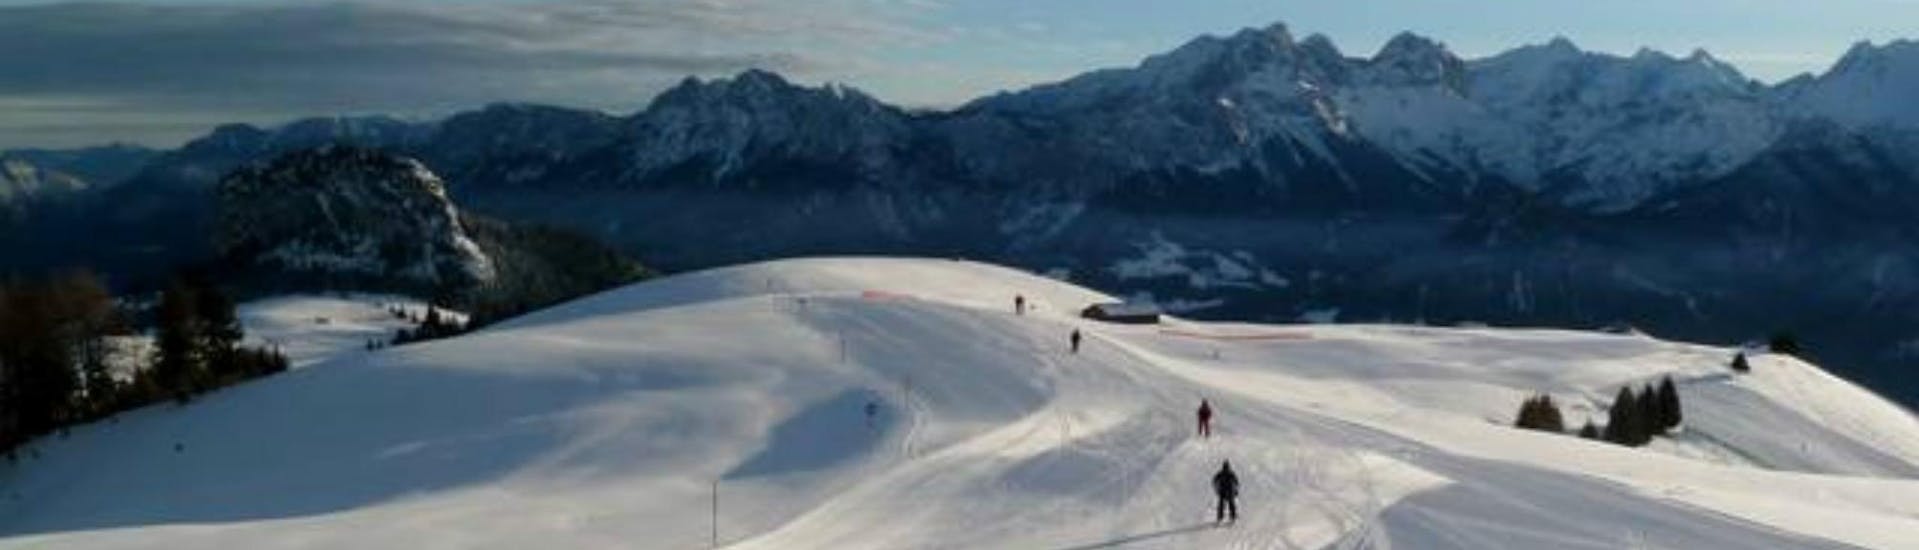 Vue sur le paysage ensoleillé lors d'un cours de ski avec une école de ski dans la destination de ski Loser-Altaussee. 